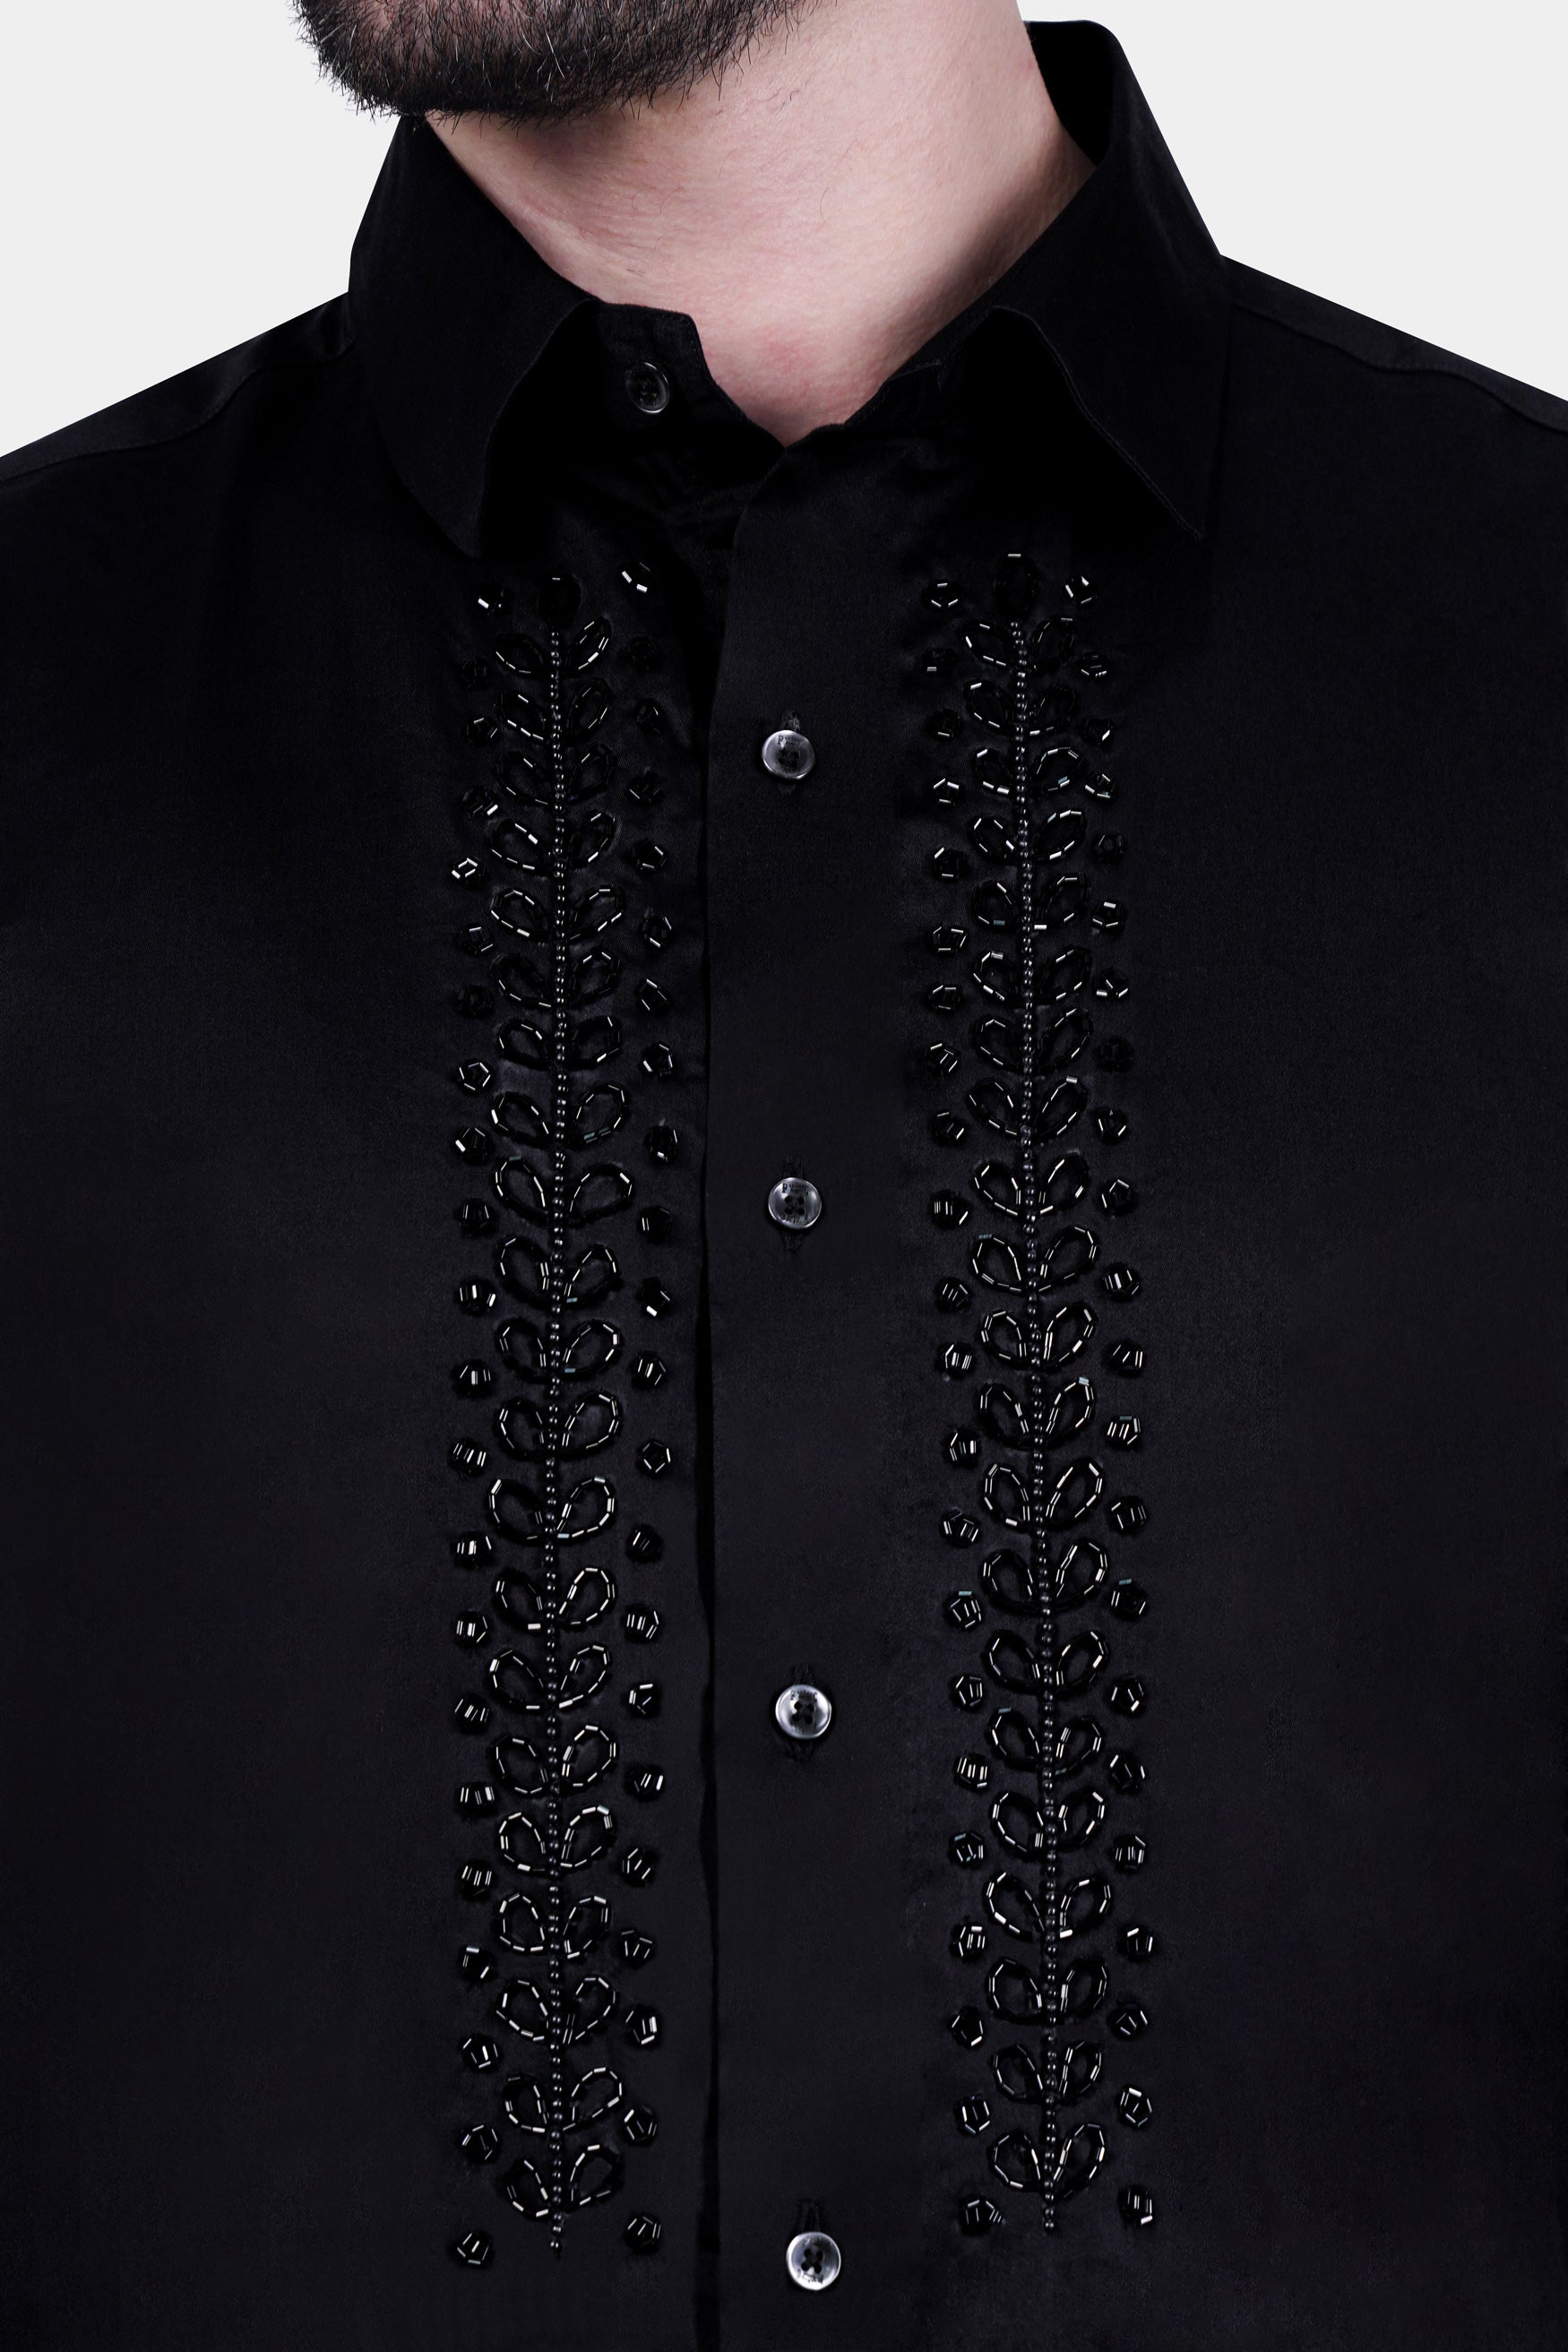 Jade Black Leaves Handcrafted Beadswork Subtle Sheen Super Soft Premium Cotton Designer Shirt